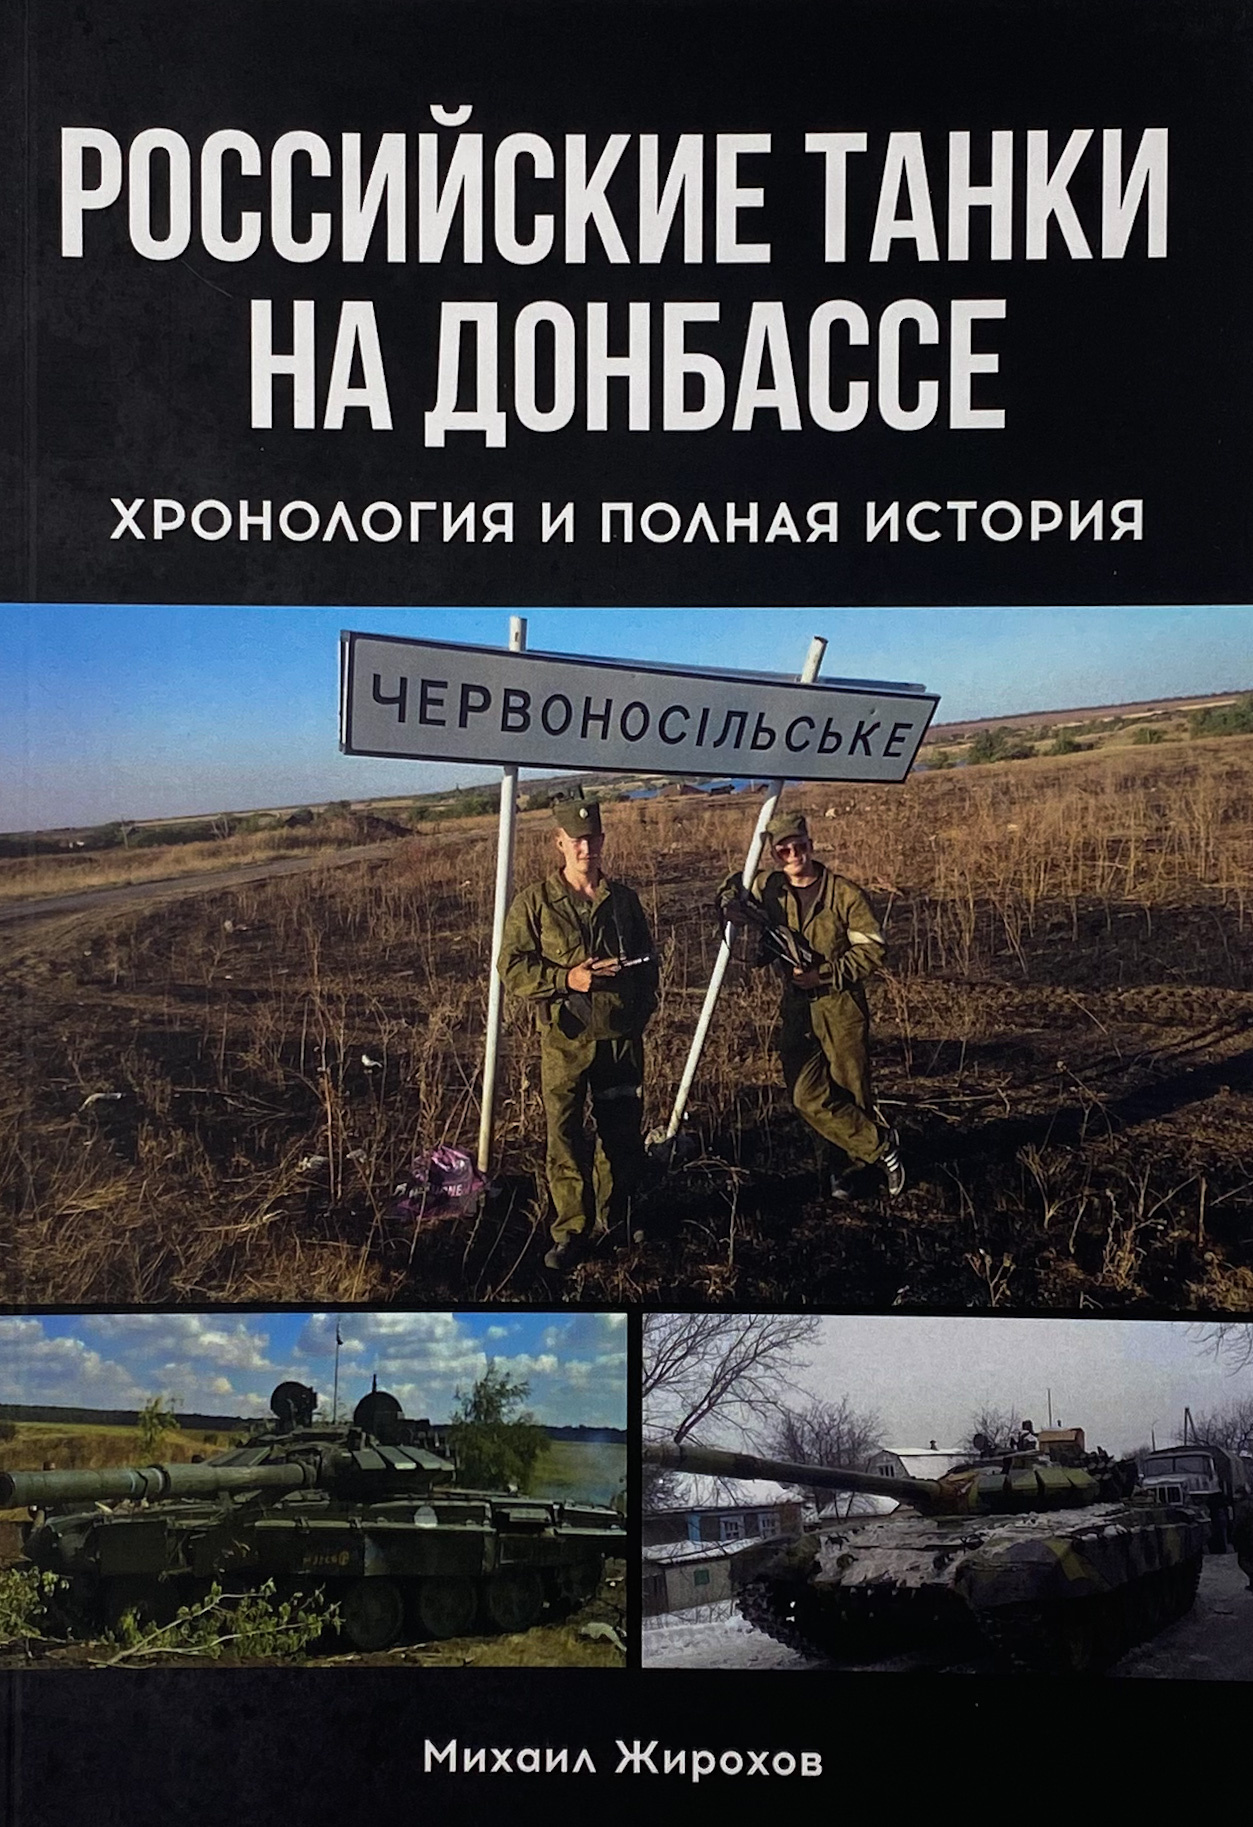 Российские танки на Донбассе. Автор — Михайло Жирохов. 